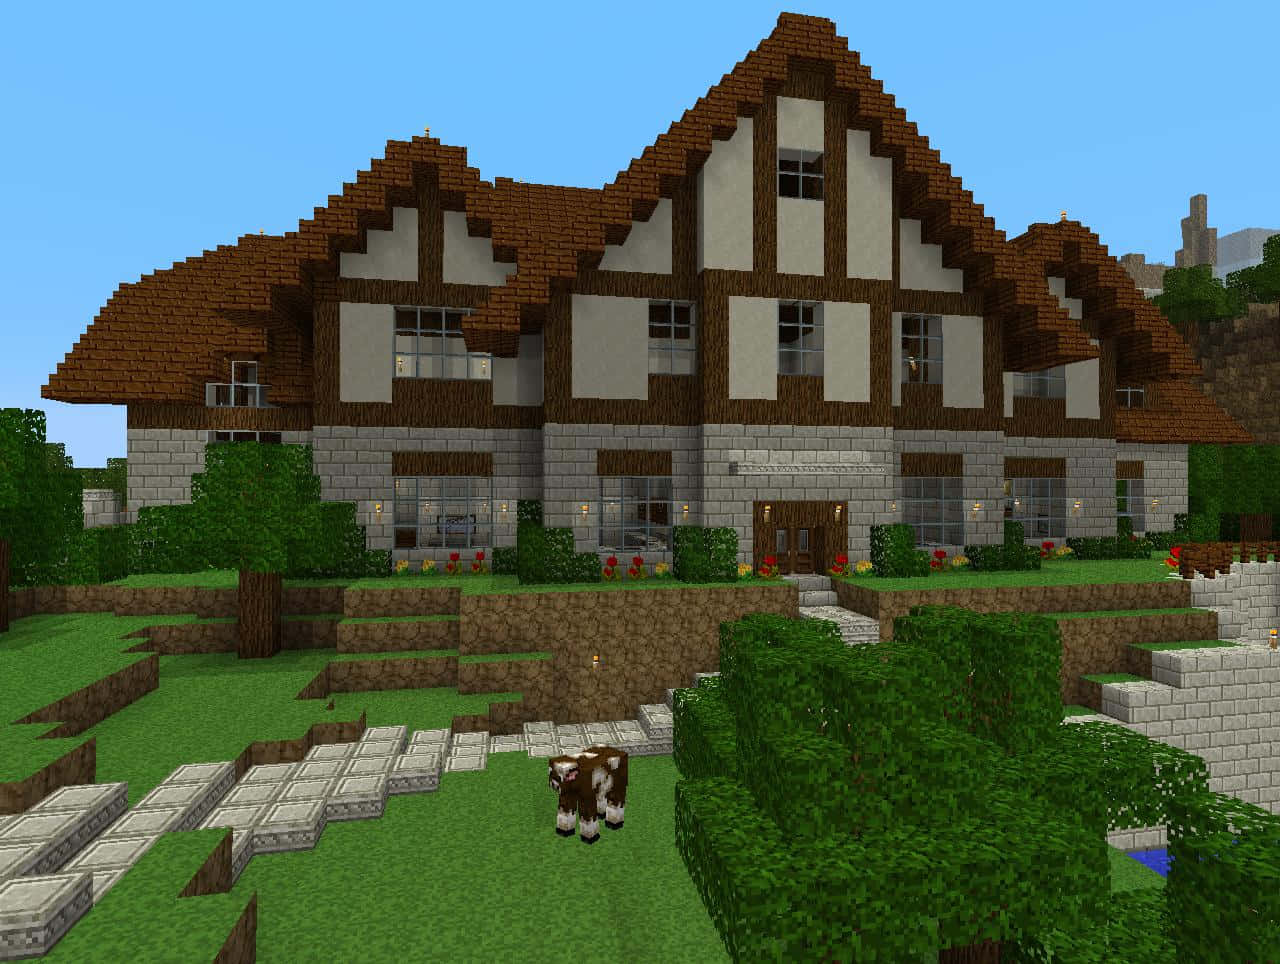 Etthandgjort Minecraft-hus Byggt Med Rödsten Och Kvartsblock.